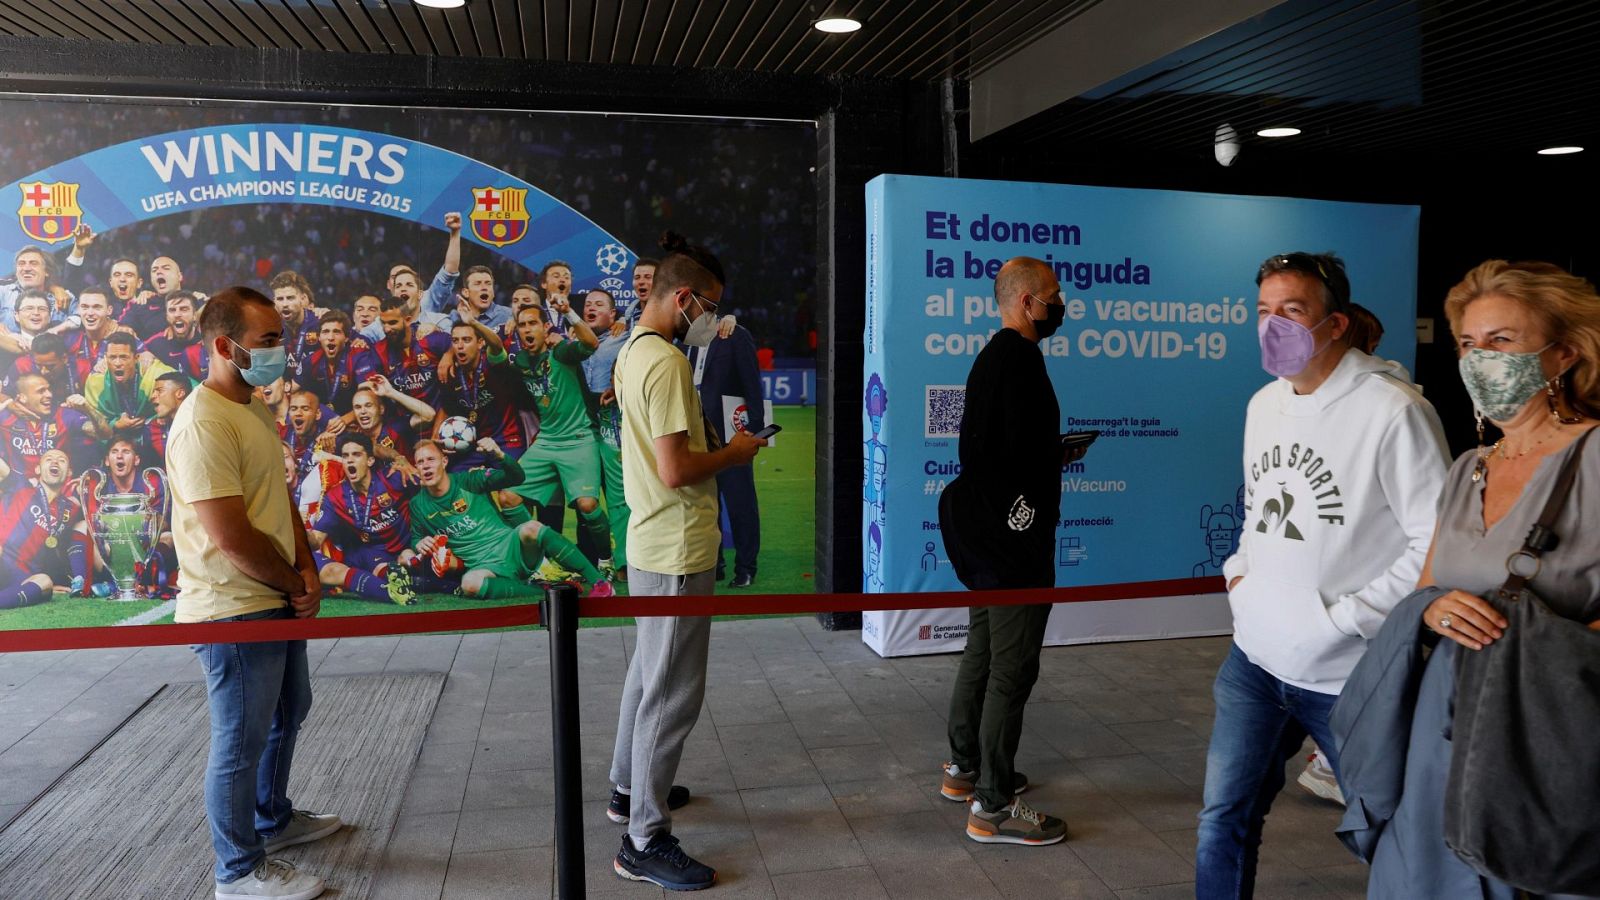 Vacunación masiva contra la pandemia de COVID19 en el Camp Nou de Barcelona